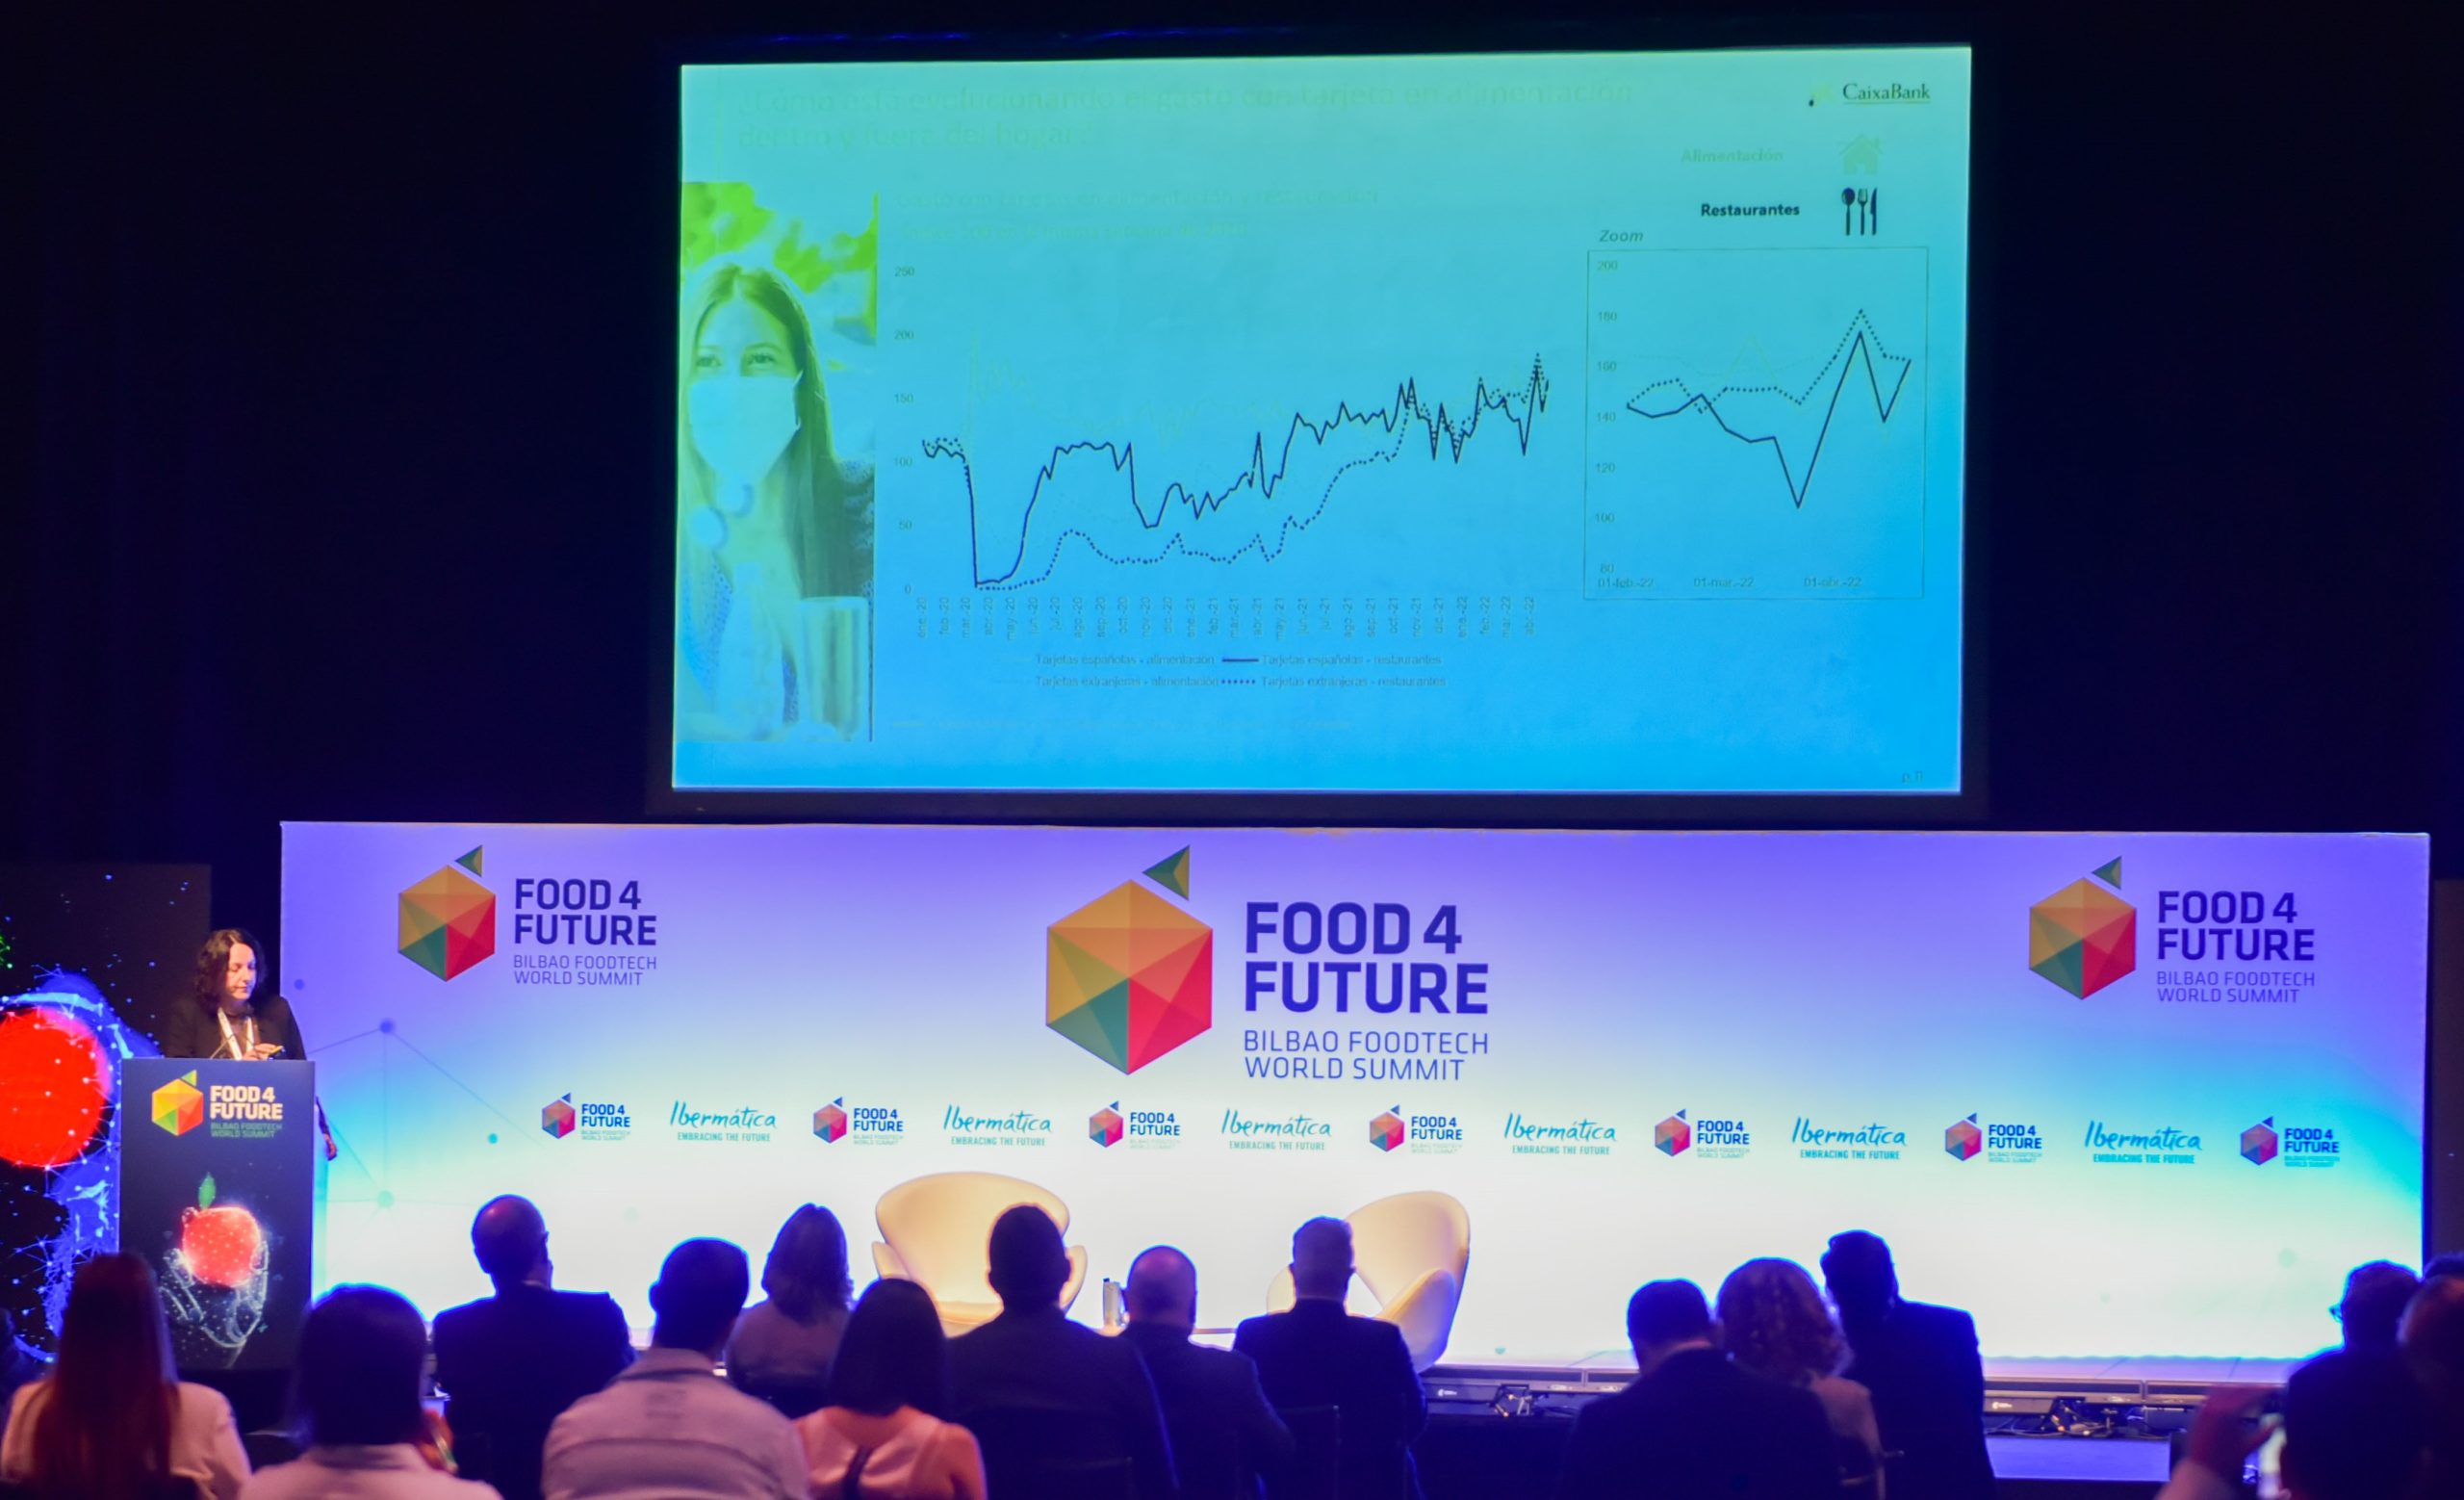 Análisis de datos e Inteligencia Artificial como solución para la seguridad alimentaria y el desequilibrio de precios 